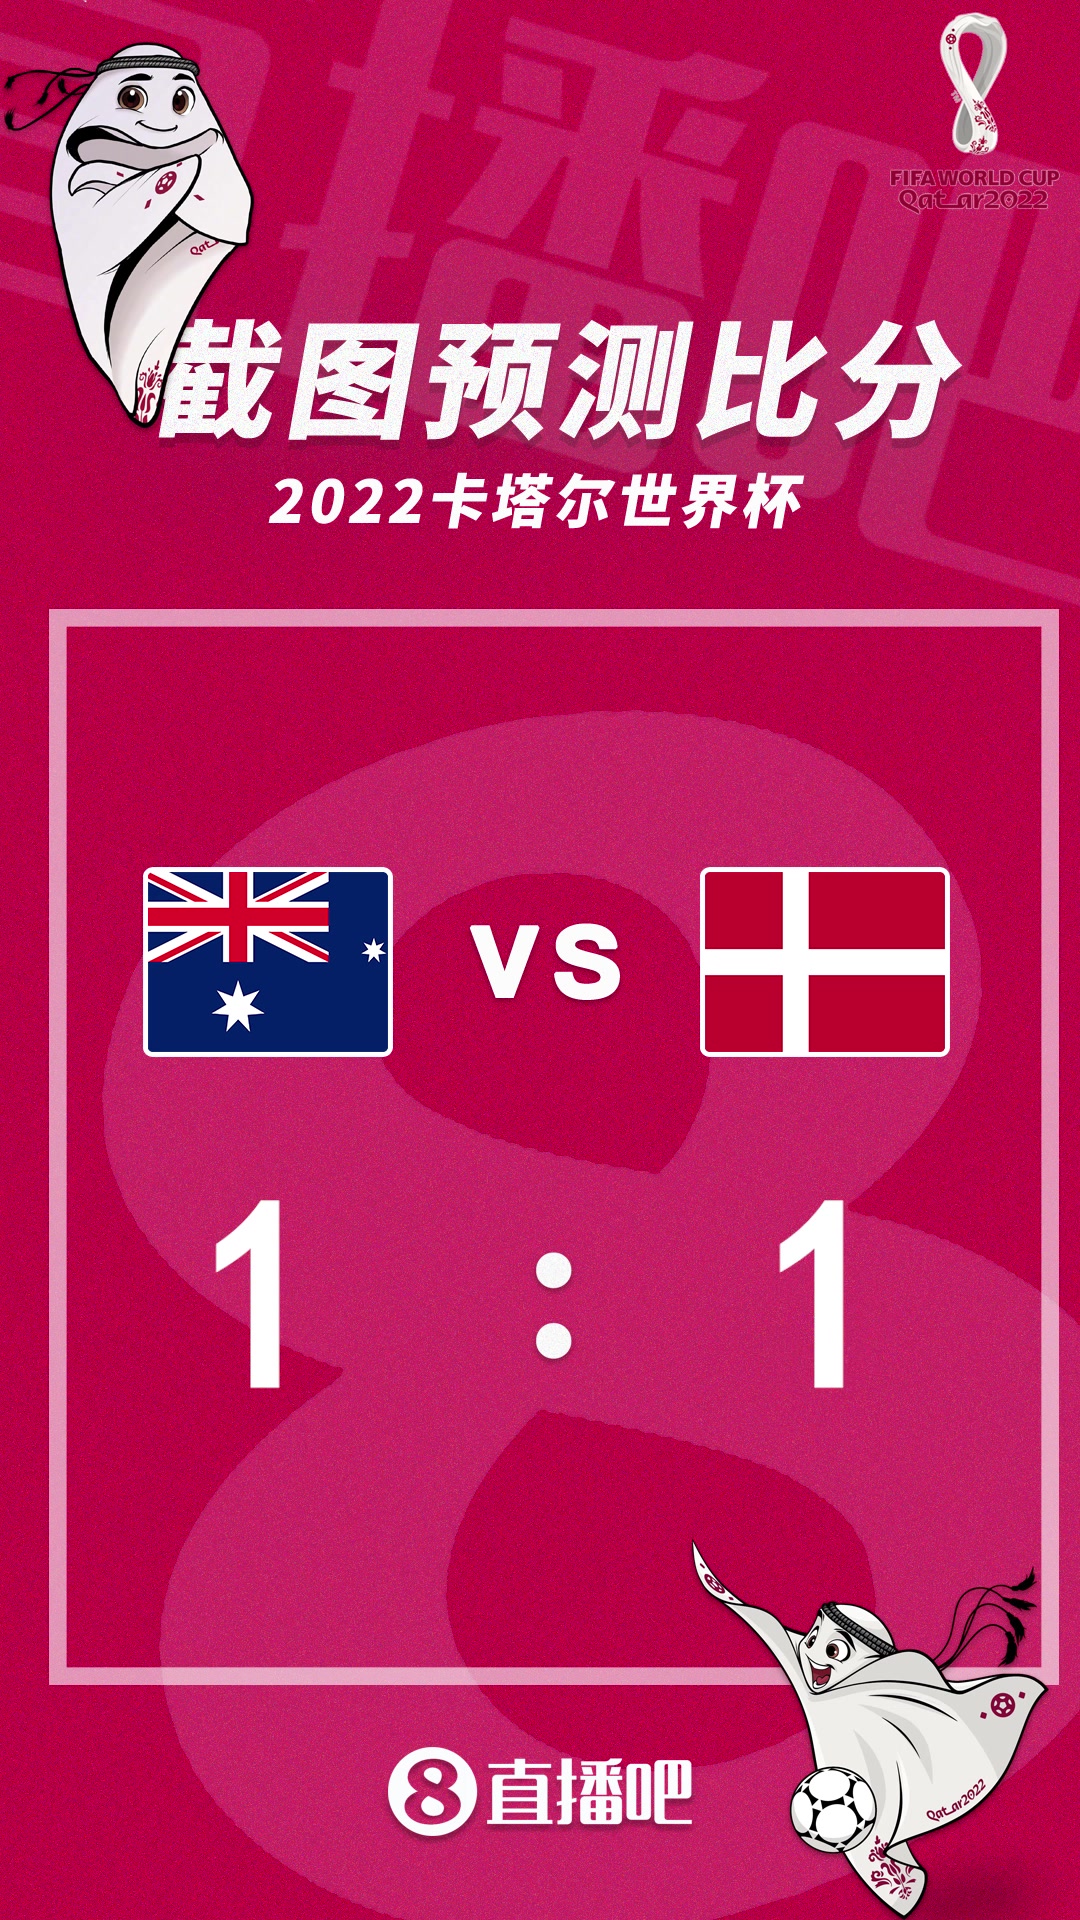 出线关键战！截图预测澳大利亚vs丹麦比分